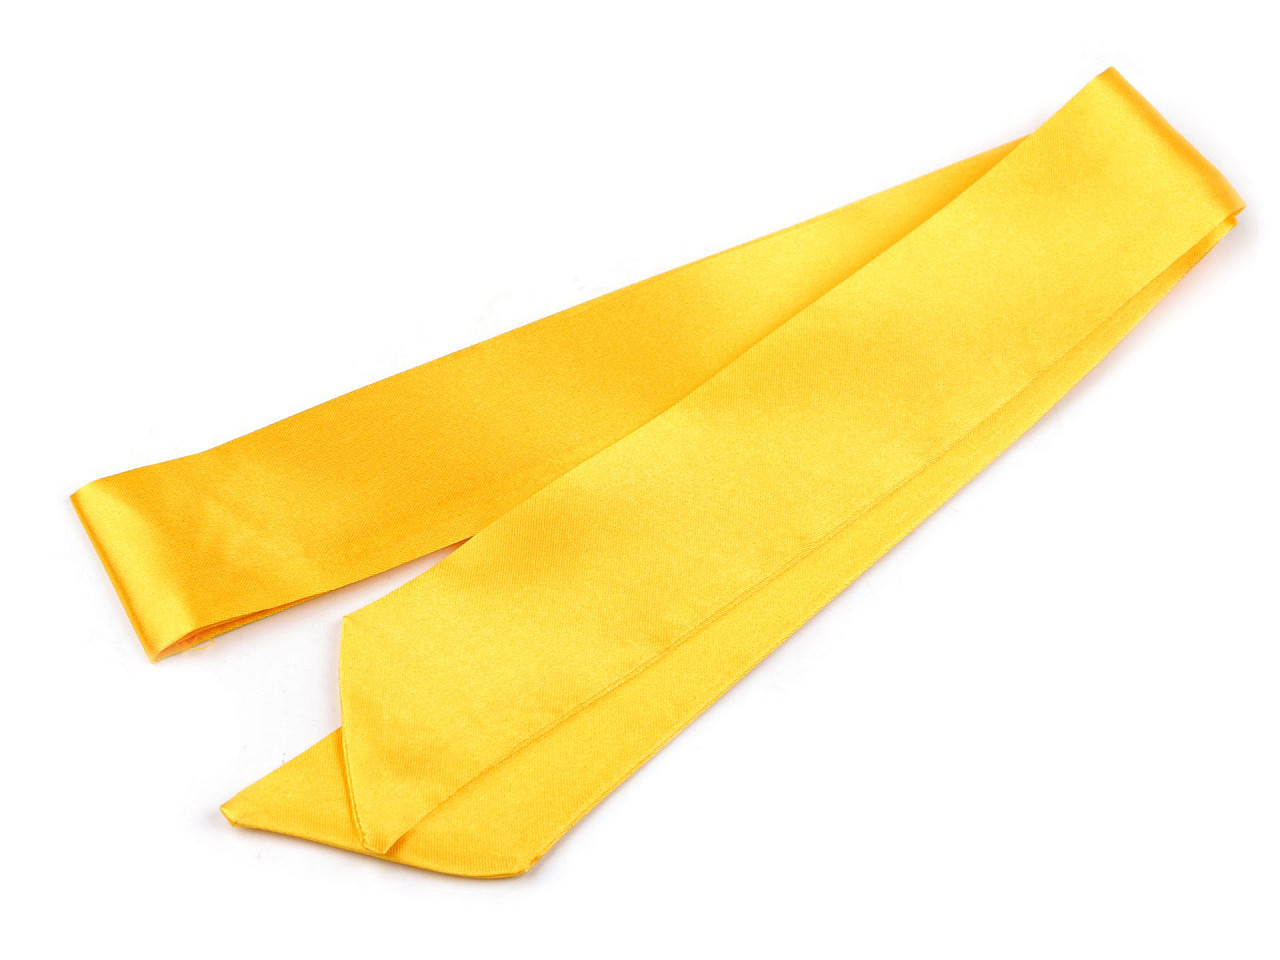 Šátek úzký do vlasů, na krk, na kabelku jednobarevný, s květy, barva 3 žlutá